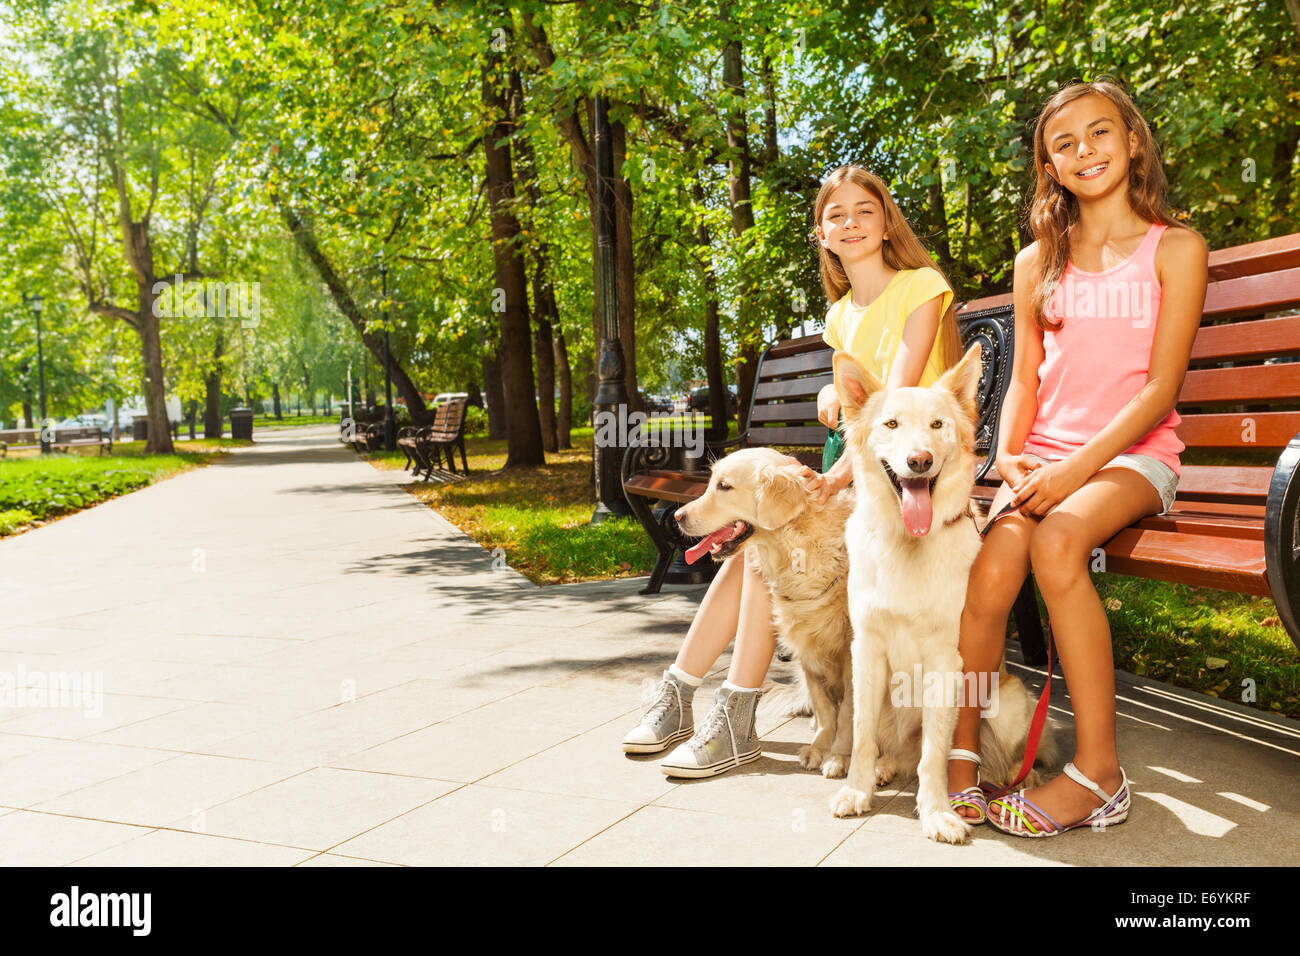 Girl two dog. Девушка с собакой в парке. Девушка с собачкой в парке. Девушка гуляет с двумя собаками. Прогулка с собакой в парке.